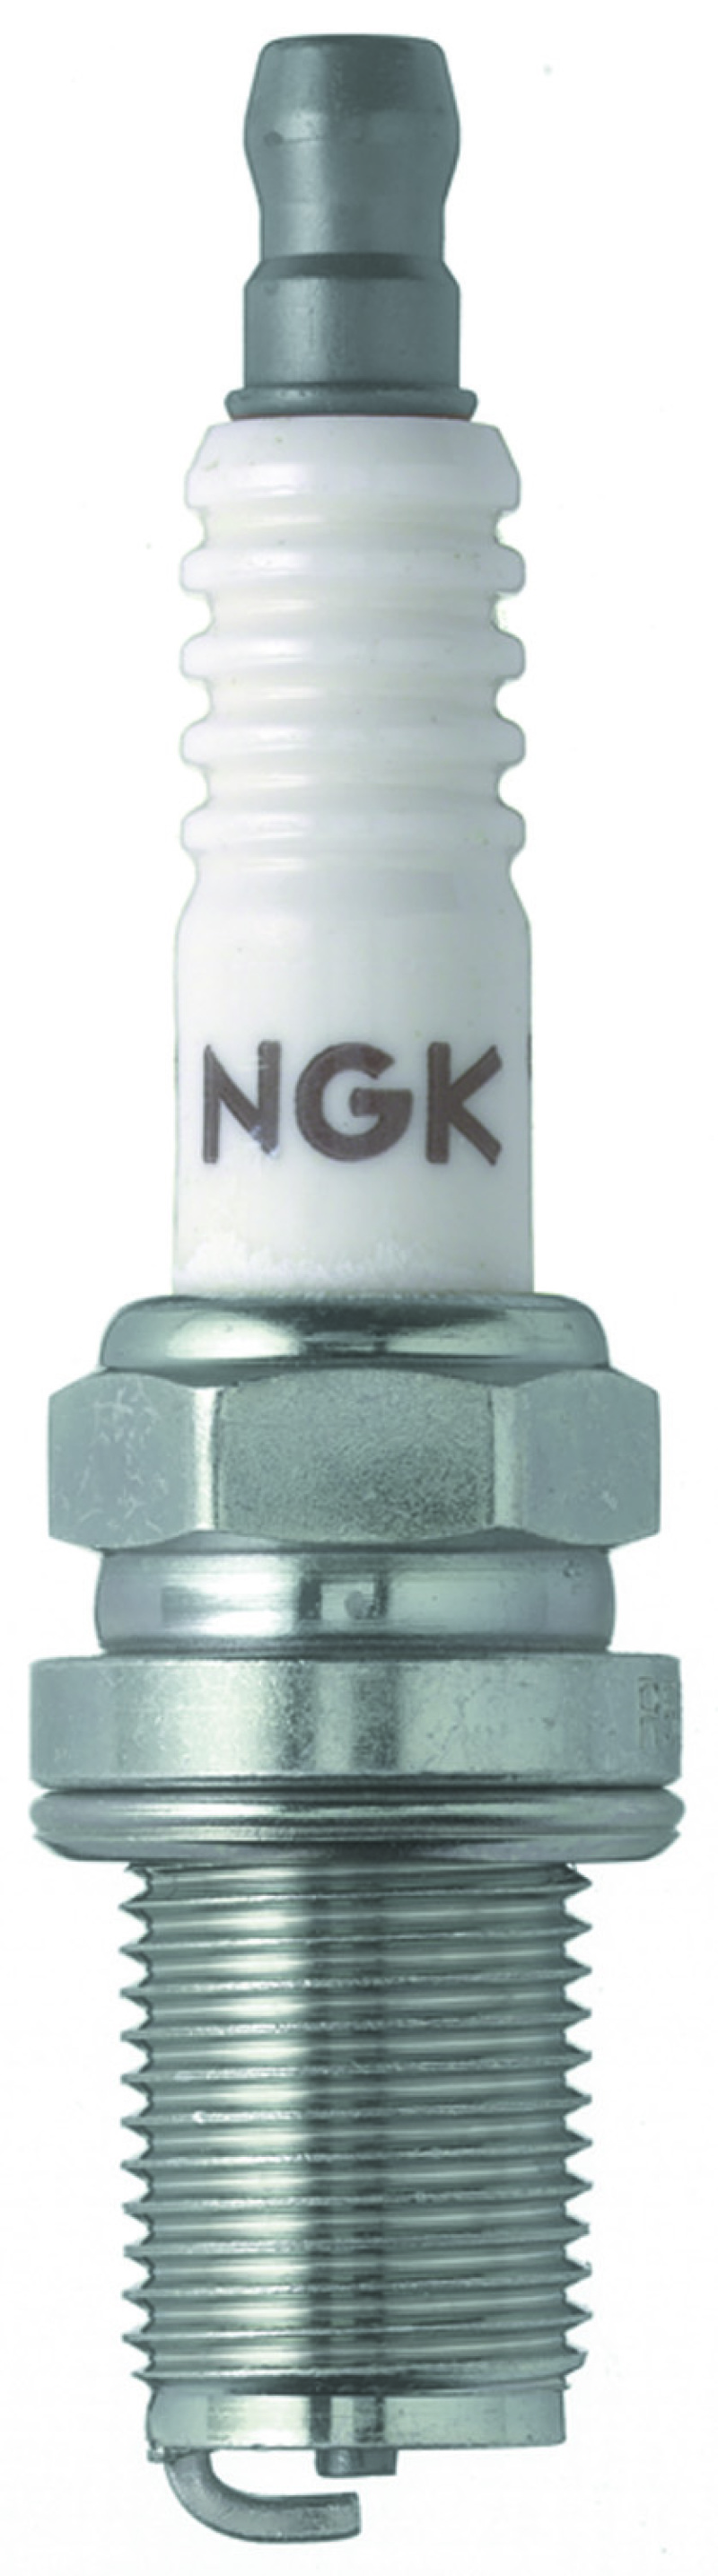 NGK Racing Spark Plug Box of 4 (R5671A-7) - 4091